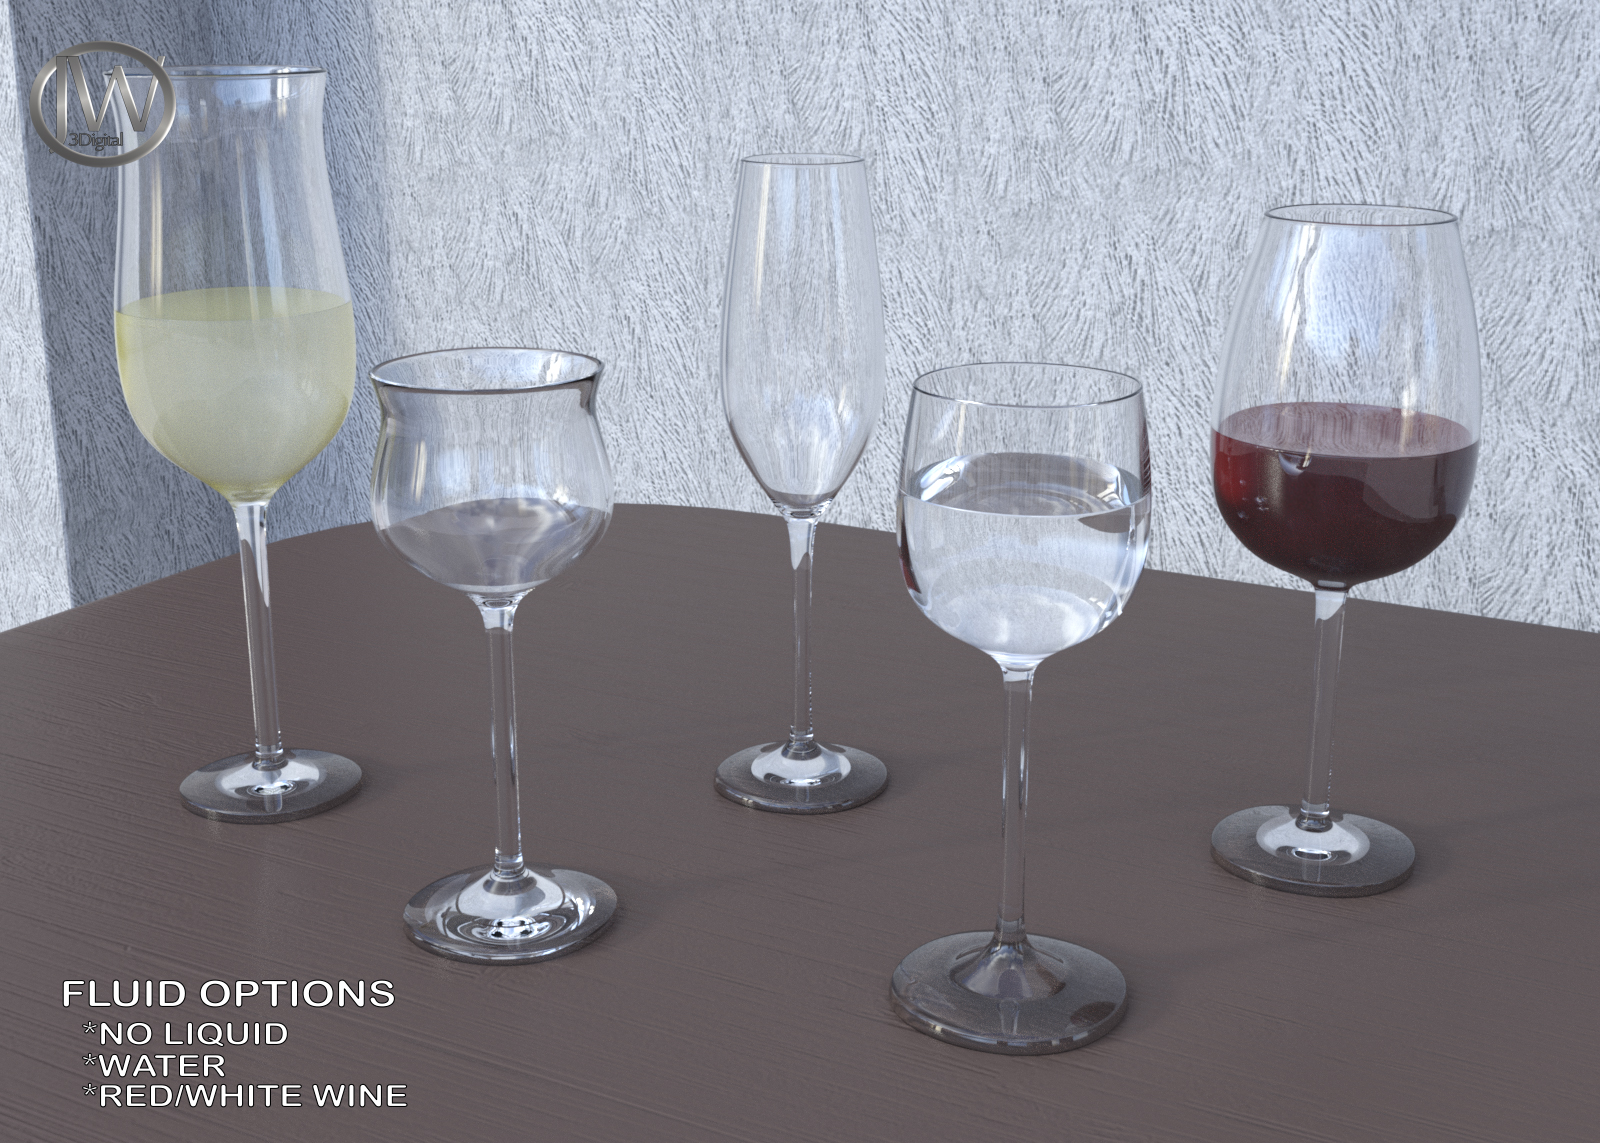 JW Glassware Set by: JWolf, 3D Models by Daz 3D